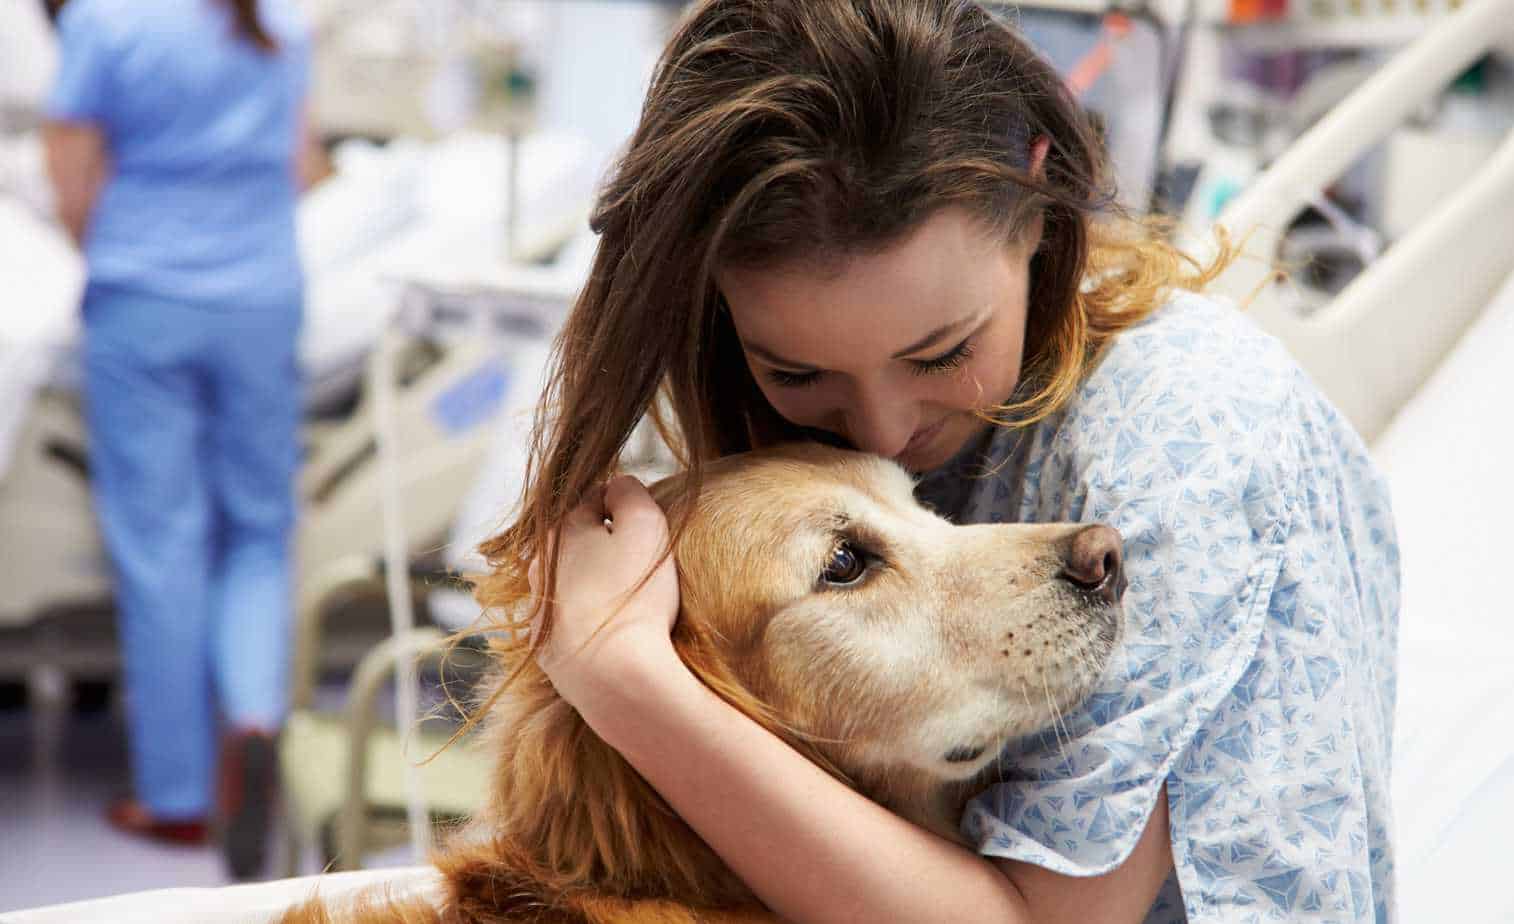 dogs visit hospital patients